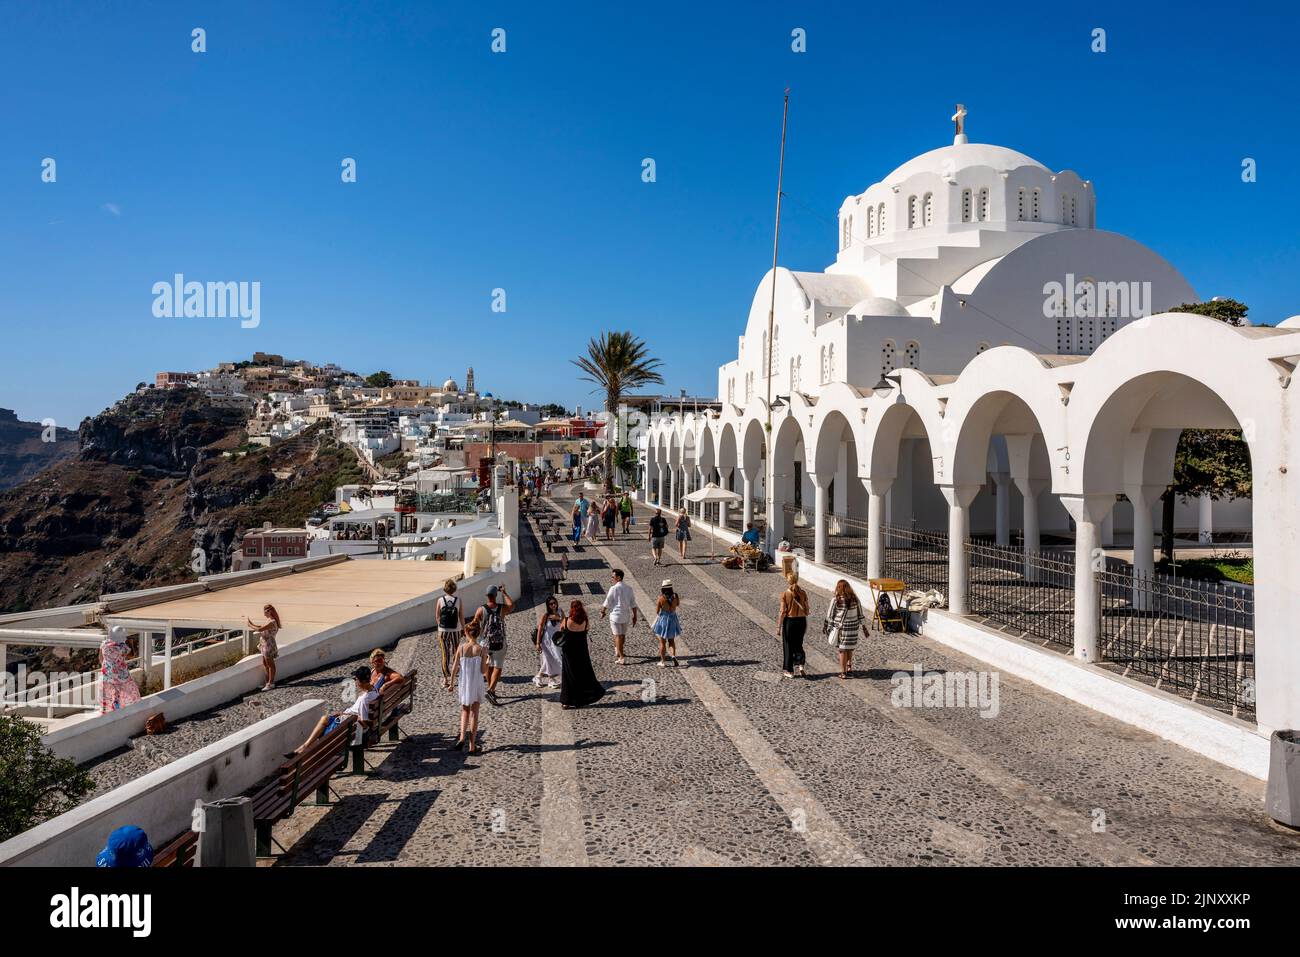 Église/Cathédrale Sainte-orthodoxe de Candlemas, Thira, Santorin, Iles grecques, Grèce. Banque D'Images